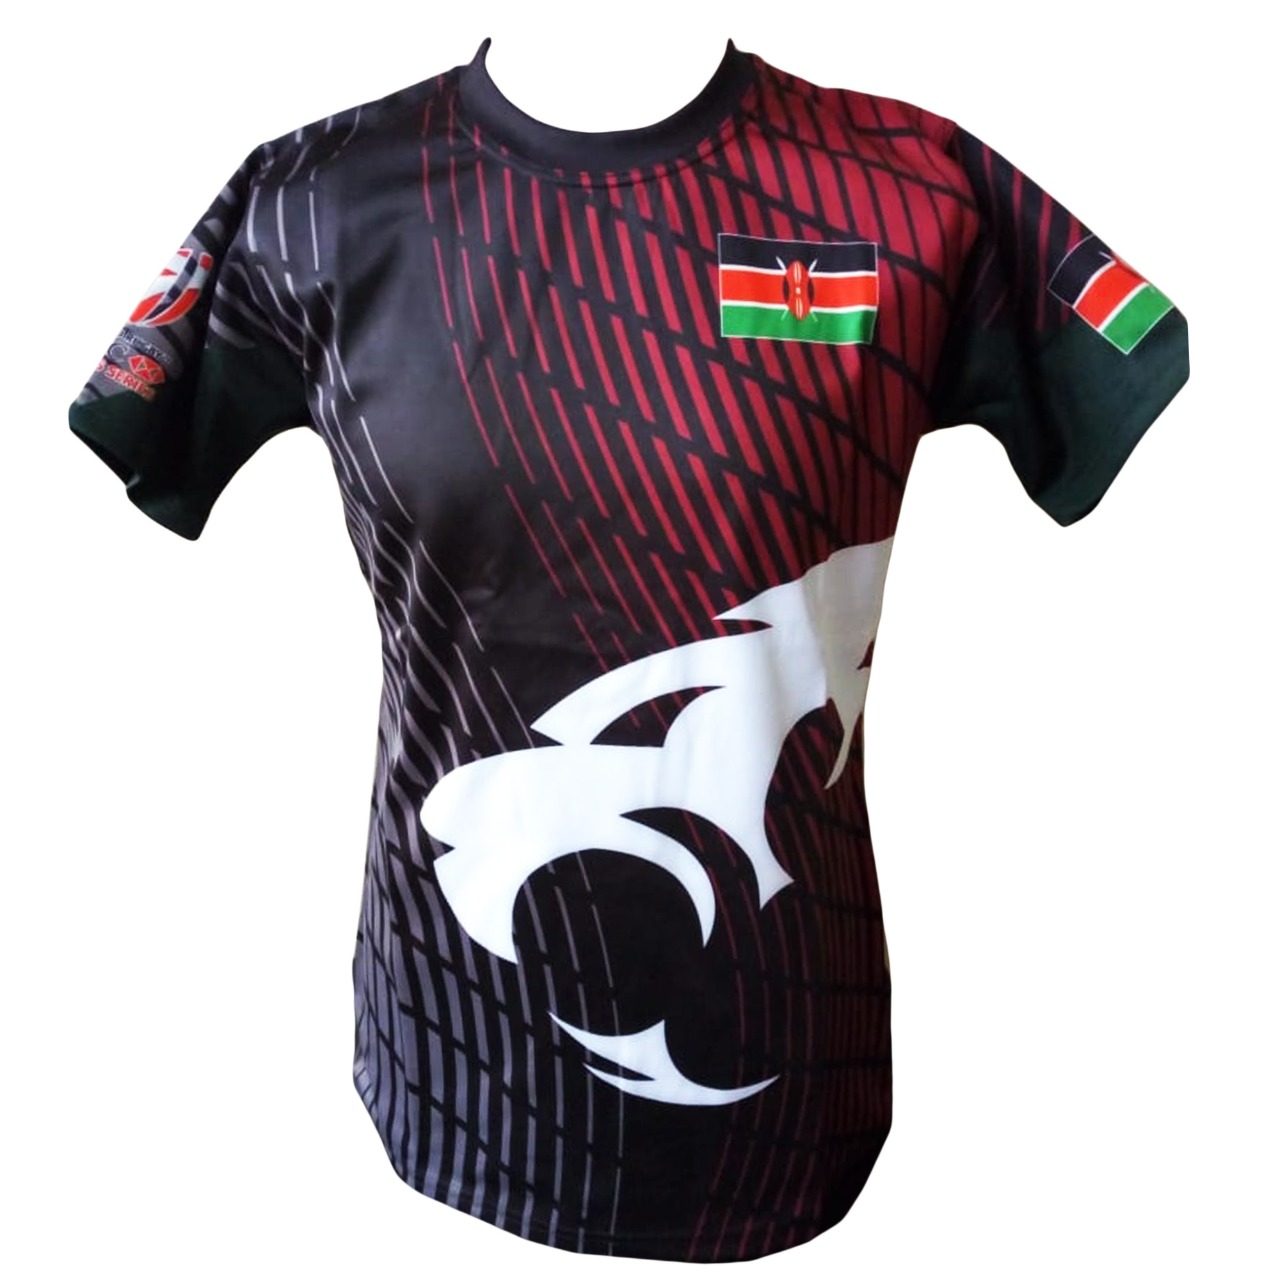 Buy New Genuine Kenya Rugby 2020 Jersey